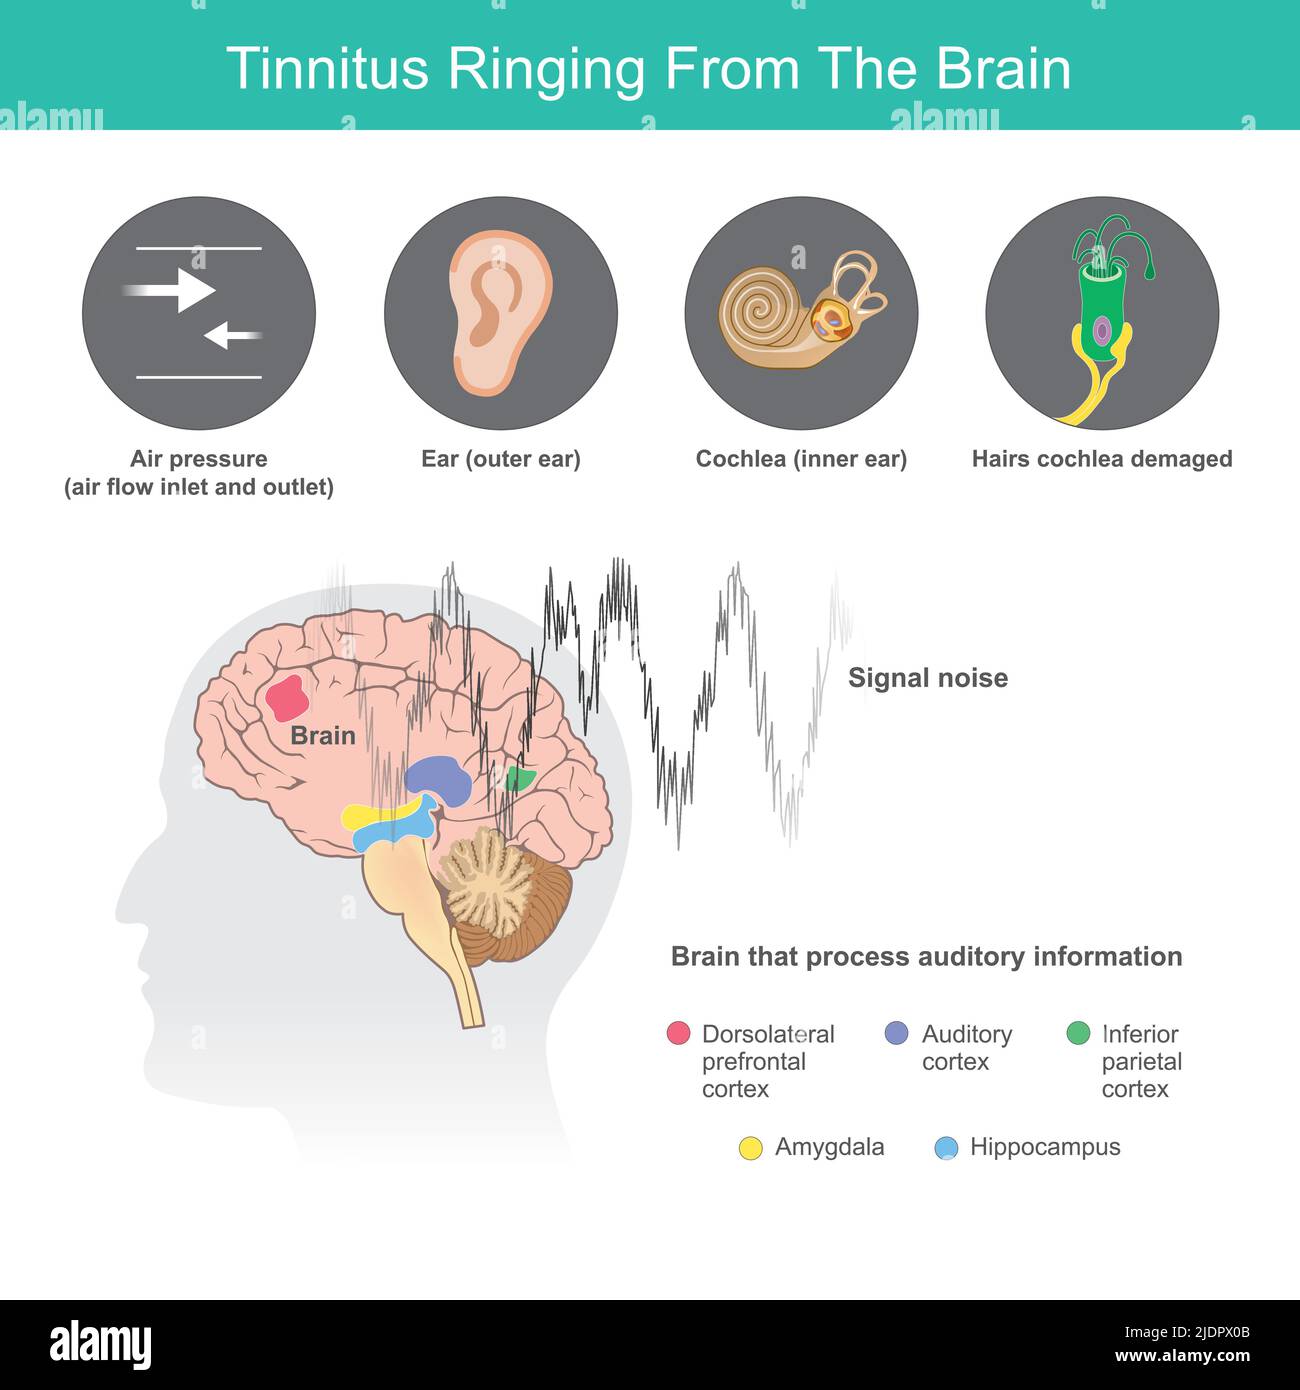 Tinnitus klingelt aus dem Gehirn, ist der Begriff für ein summendes Geräusch in den Ohren von Symptomen abnorme in den Ohren oder das Gehirn. Stock Vektor